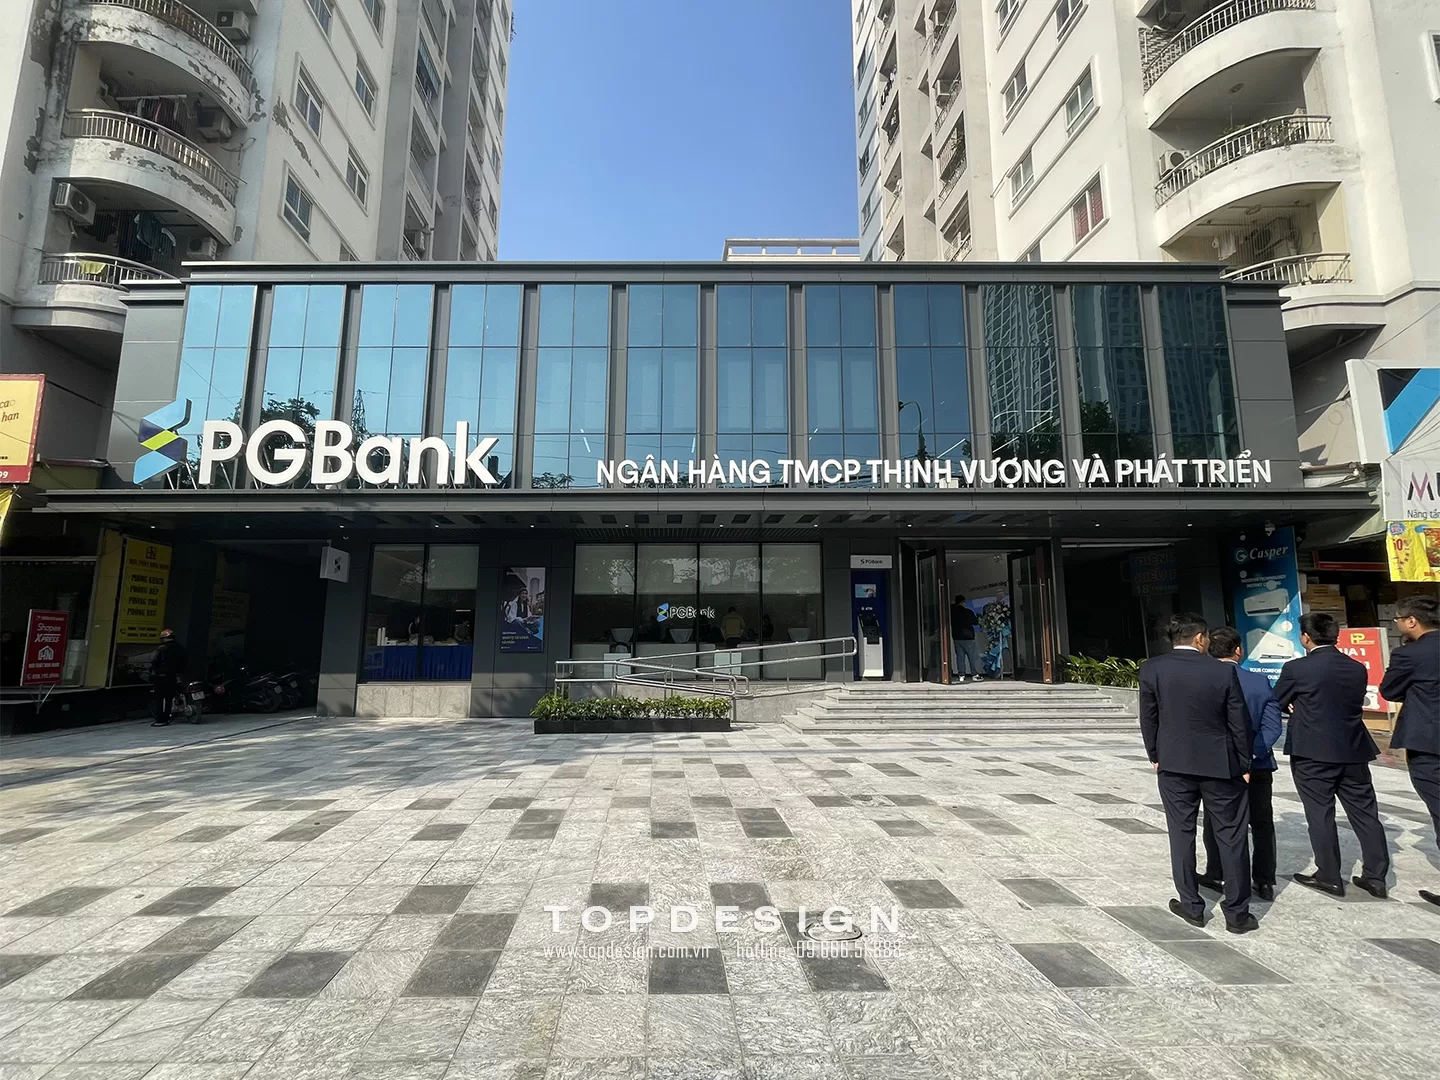 Thi công nội thất ngân hàng PG Bank - Topdesign 01